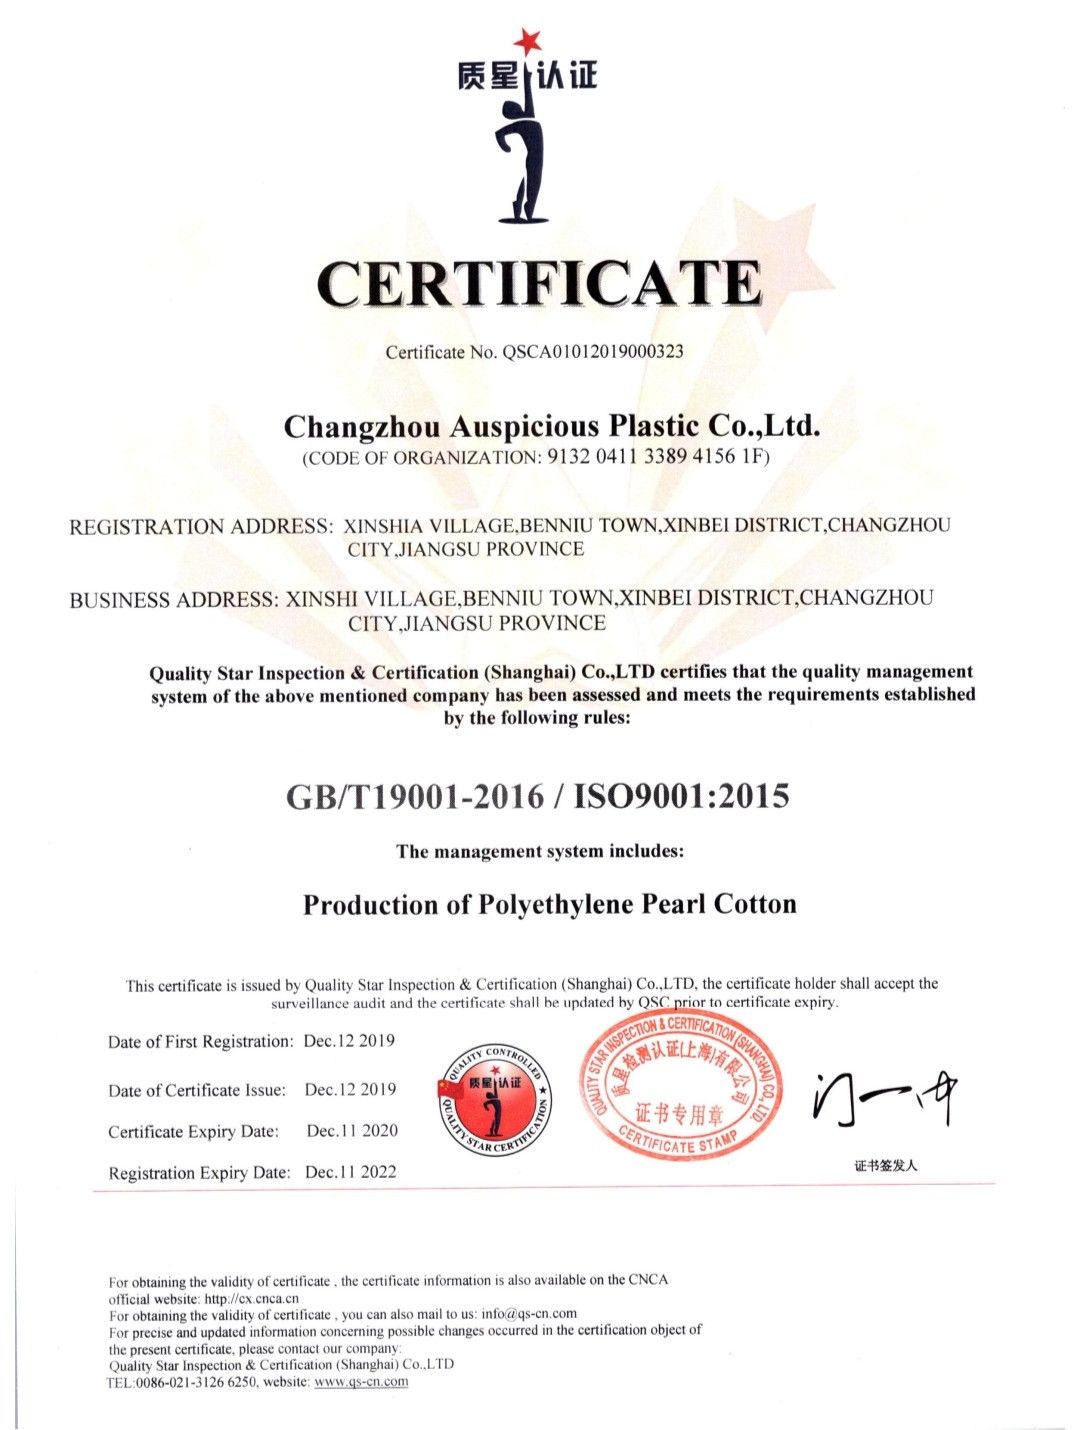 Chine Changzhou Auspicious Plastic Co., Ltd. Certifications